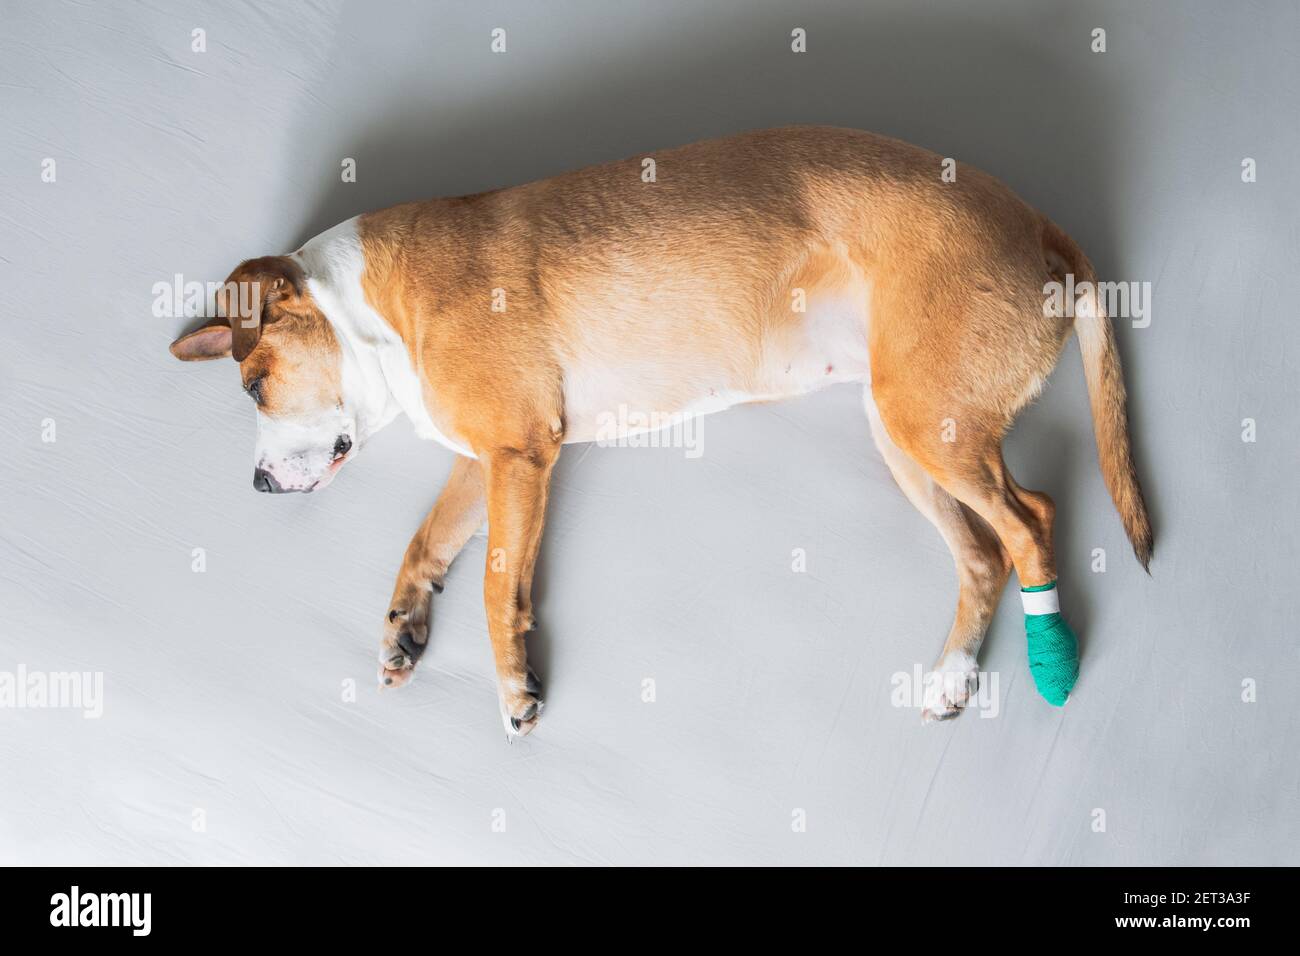 Le chien repose sur le côté avec la jambe dans le bandage médical. Animaux de compagnie blessés, traumatisme, patte blessée, concepts vétérinaires Banque D'Images